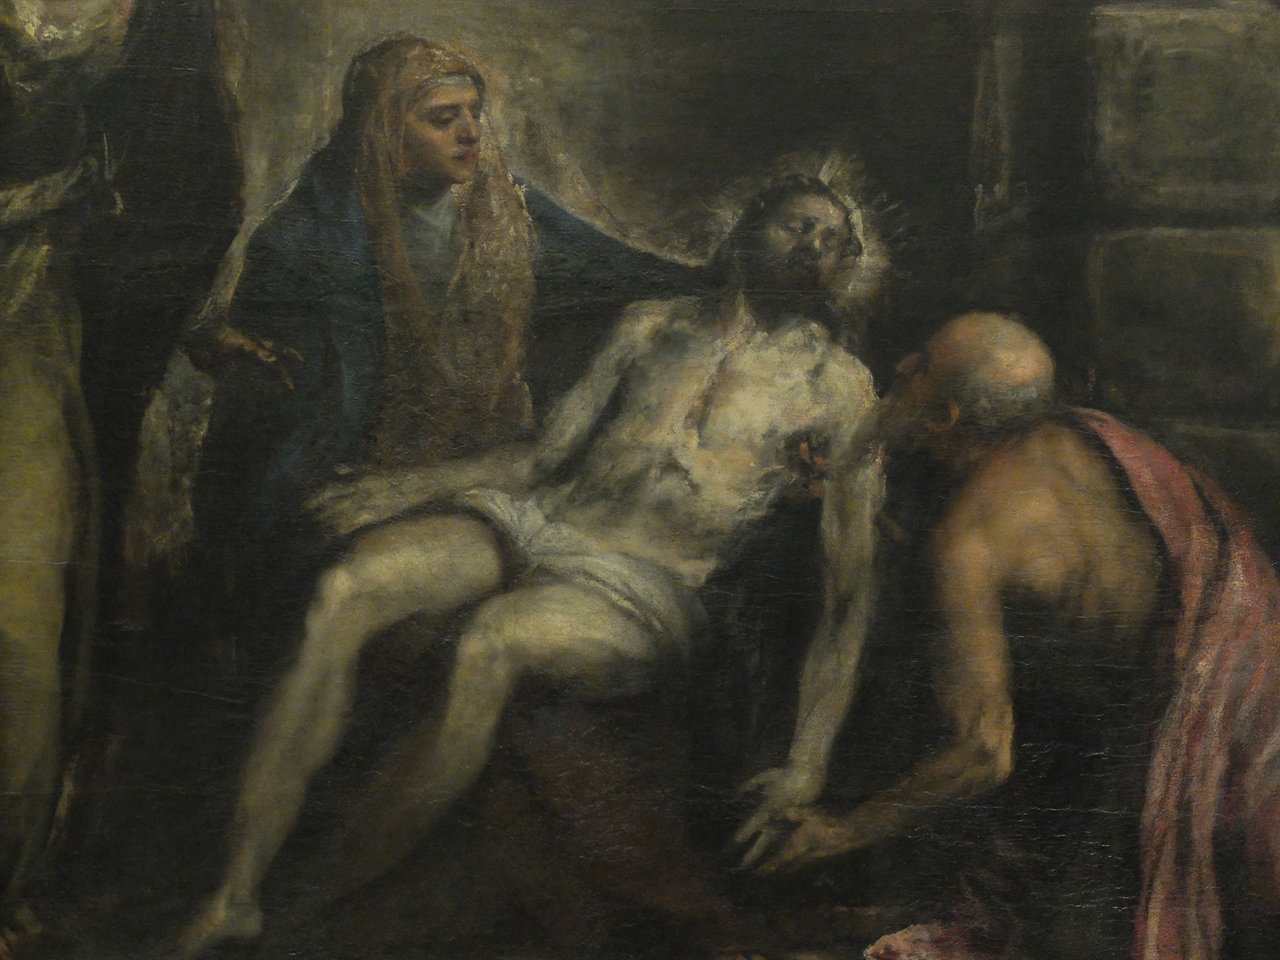 티치아노, '피에타'(부분), 베네치아 아카데미아 미술관. 티치아노는 죽어가는 예수를 바라보는 늙은 니고데모의 모습으로 자신을 그려 넣었습니다.